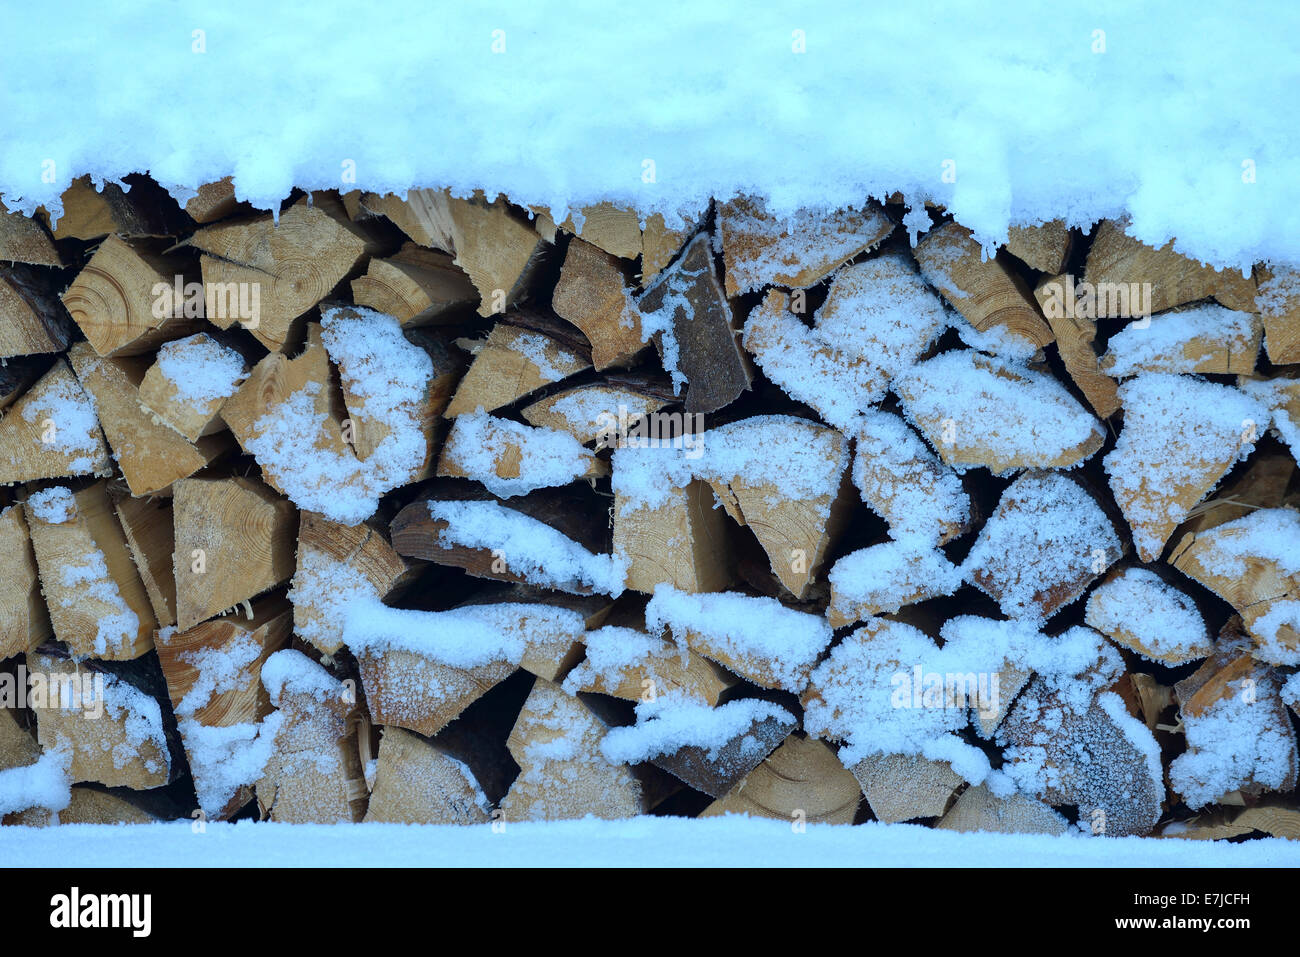 Stati Uniti d'America, Stati Uniti, America, Estremo Nord, Alaska, la pila di legno, legno, neve inverno Foto Stock